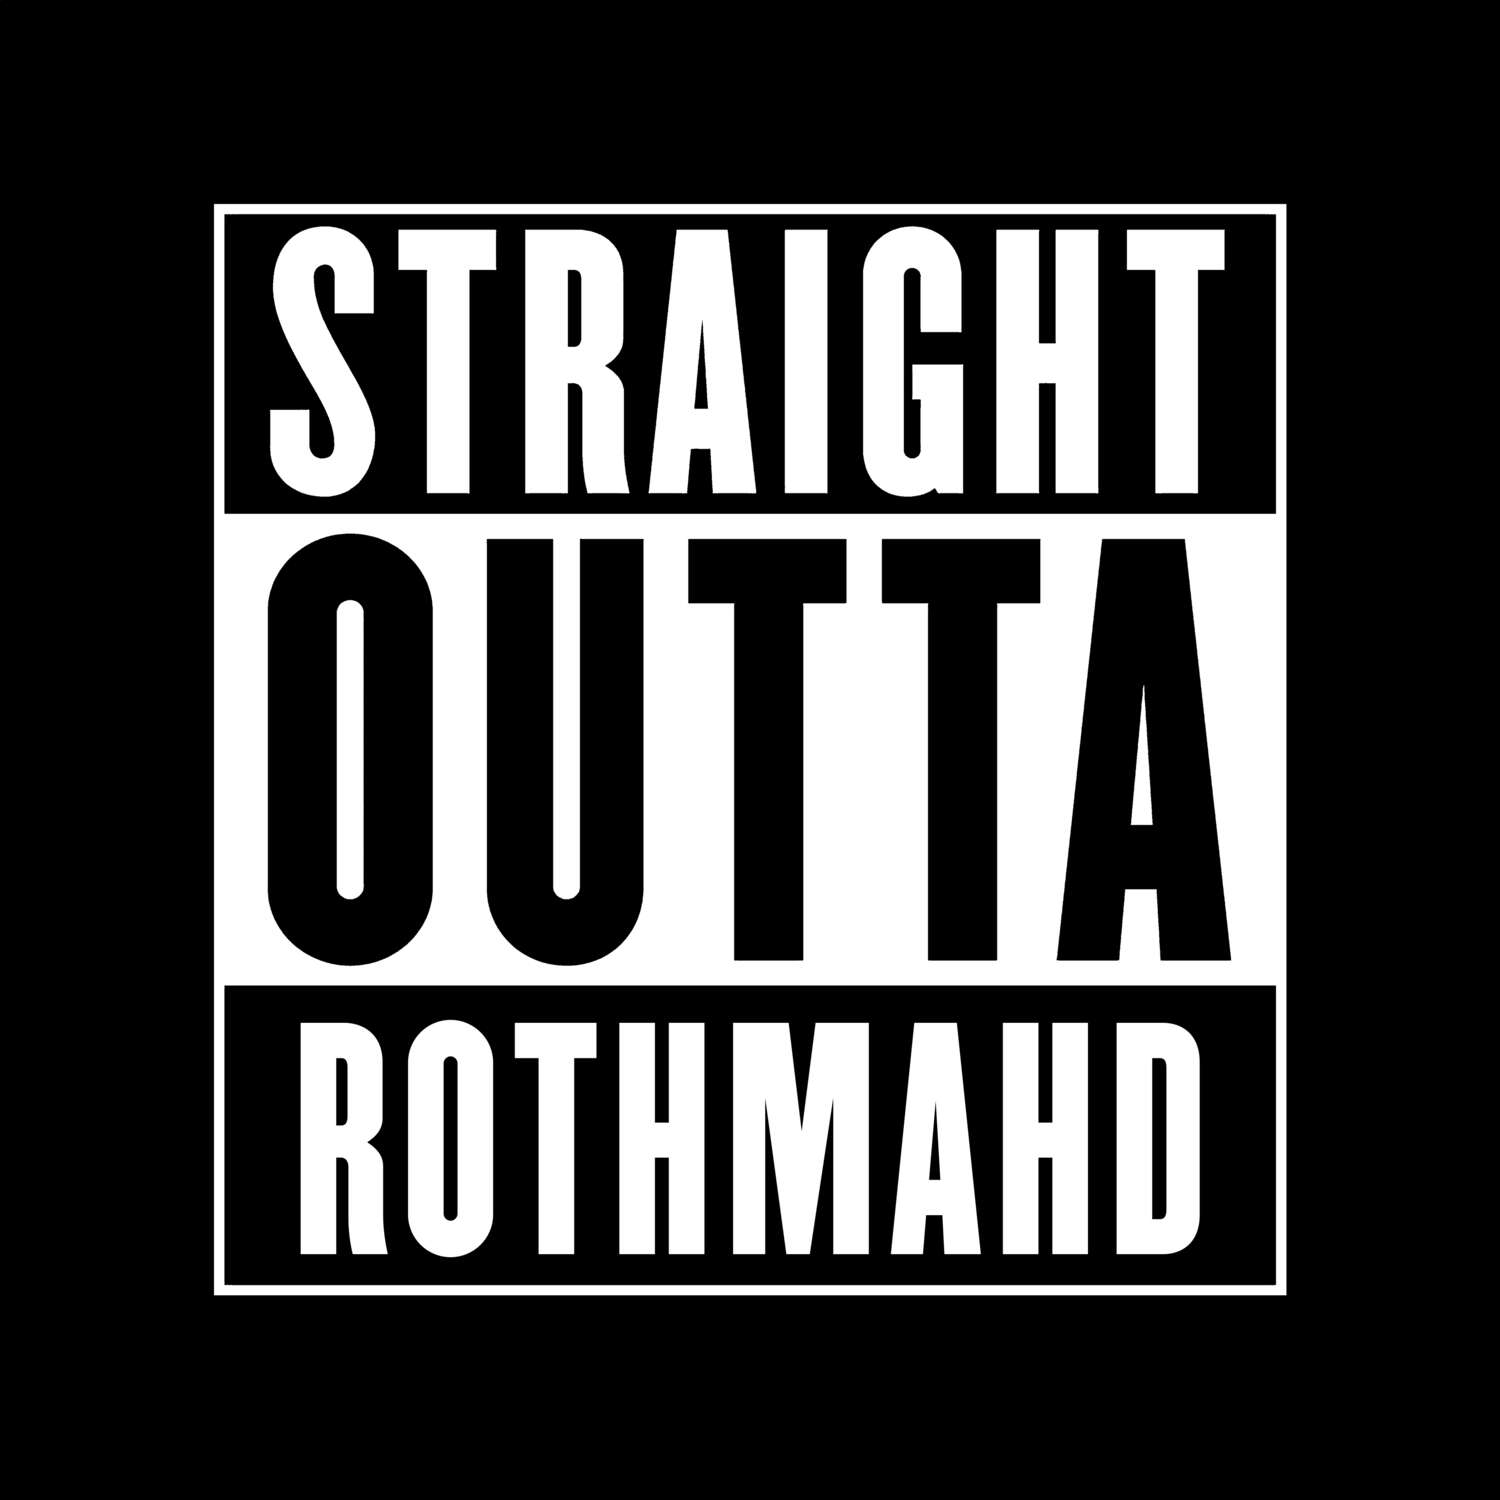 Rothmahd T-Shirt »Straight Outta«